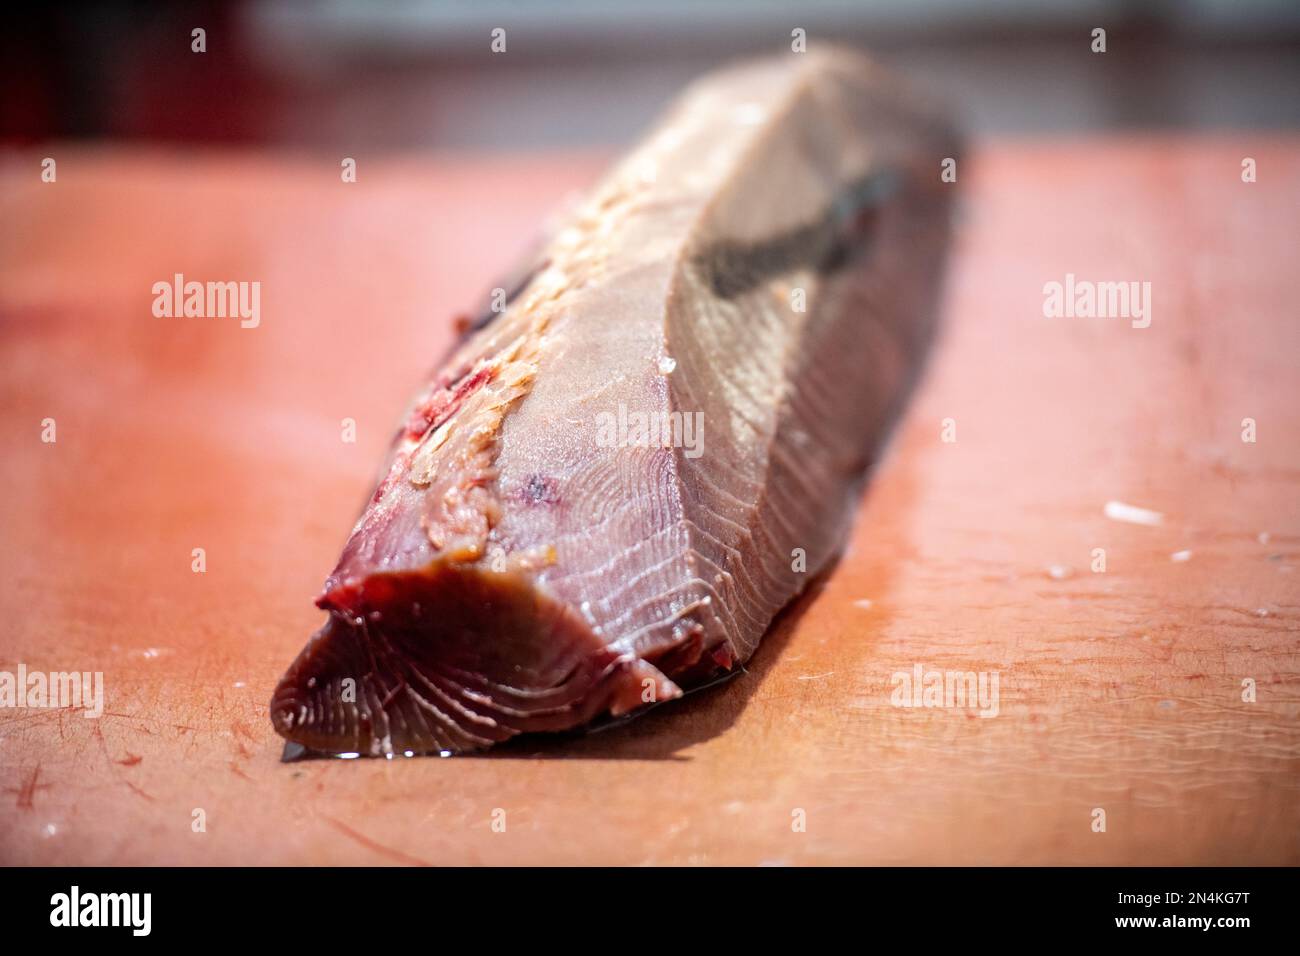 Taglio e preparazione del pesce per il processo di inscatolamento, fabbrica di inscatolamento del pesce (USISA), Isla Cristina, Spagna Foto Stock